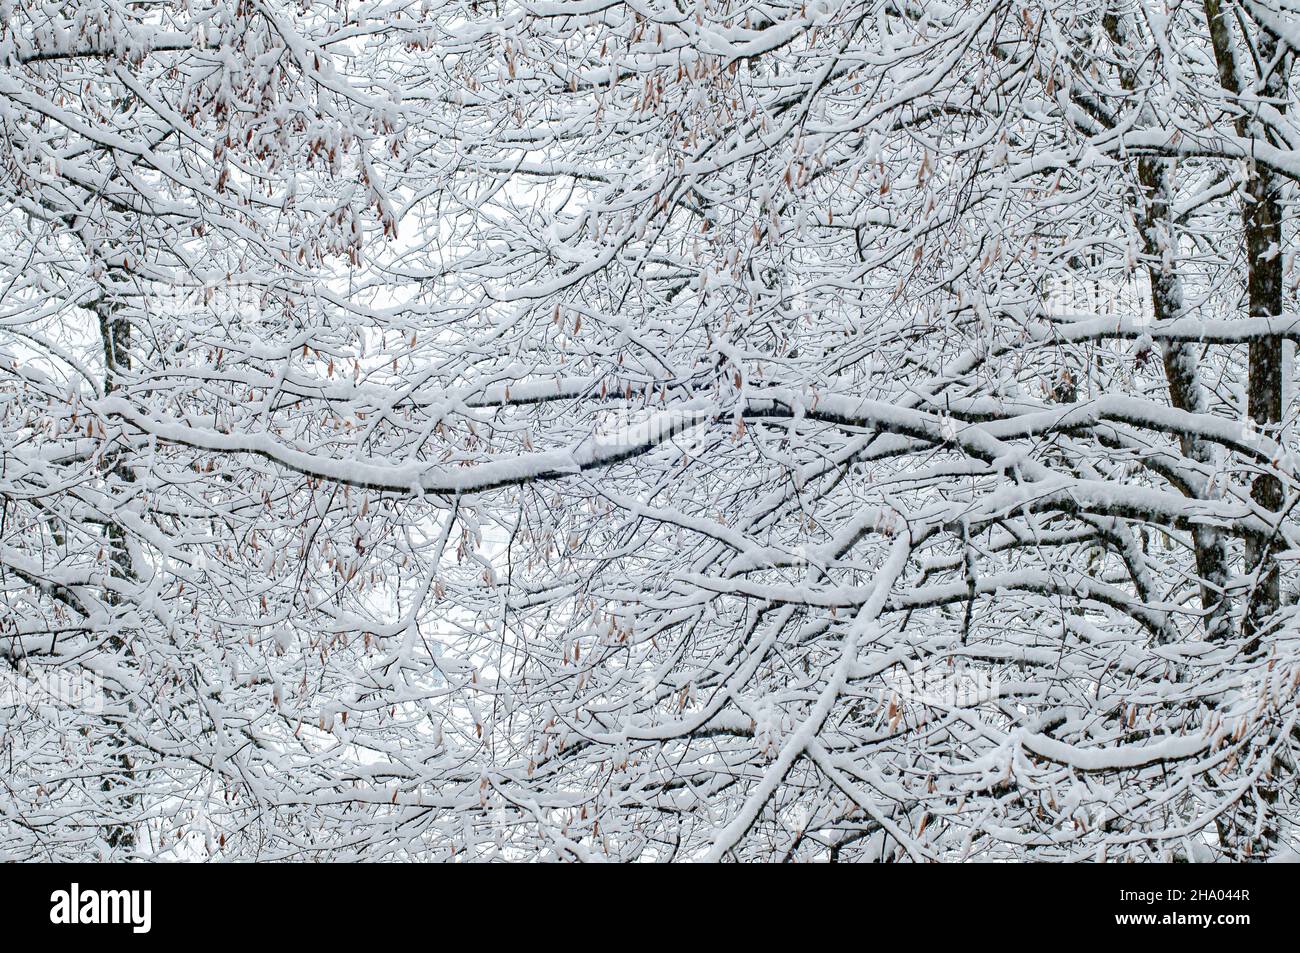 Ramas de árboles en invierno cubiertas de nieve, fondo natural Foto de stock